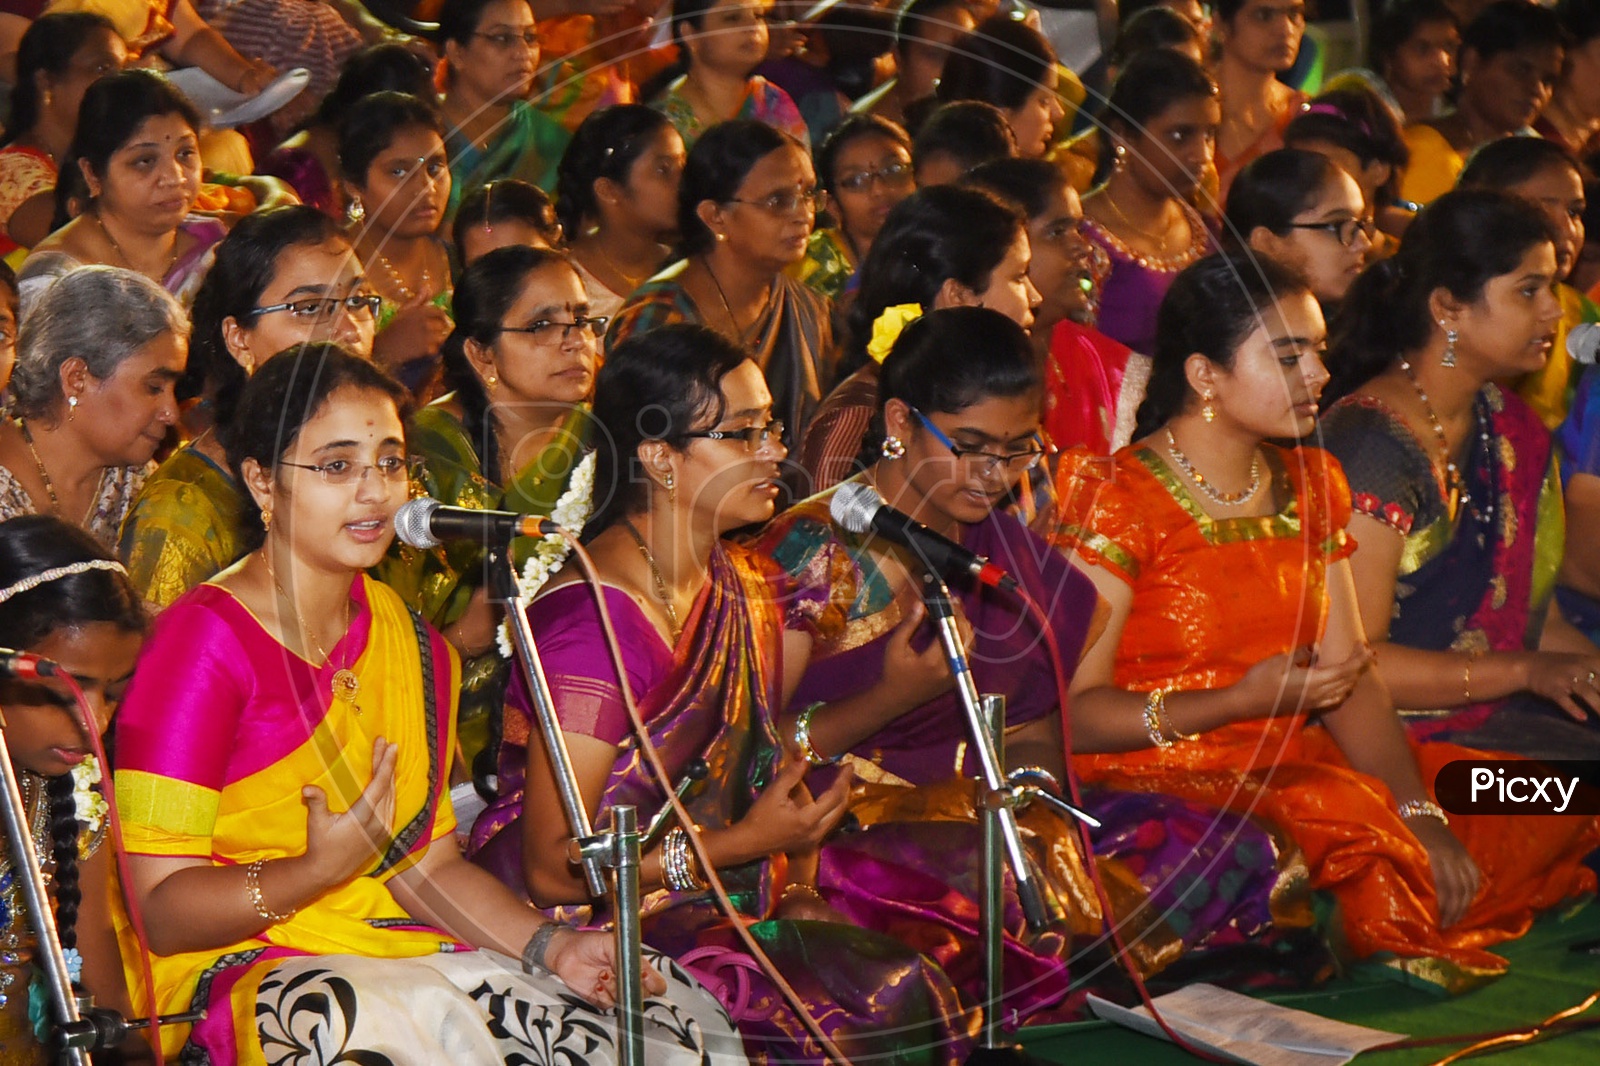 Indian women singing kirtans